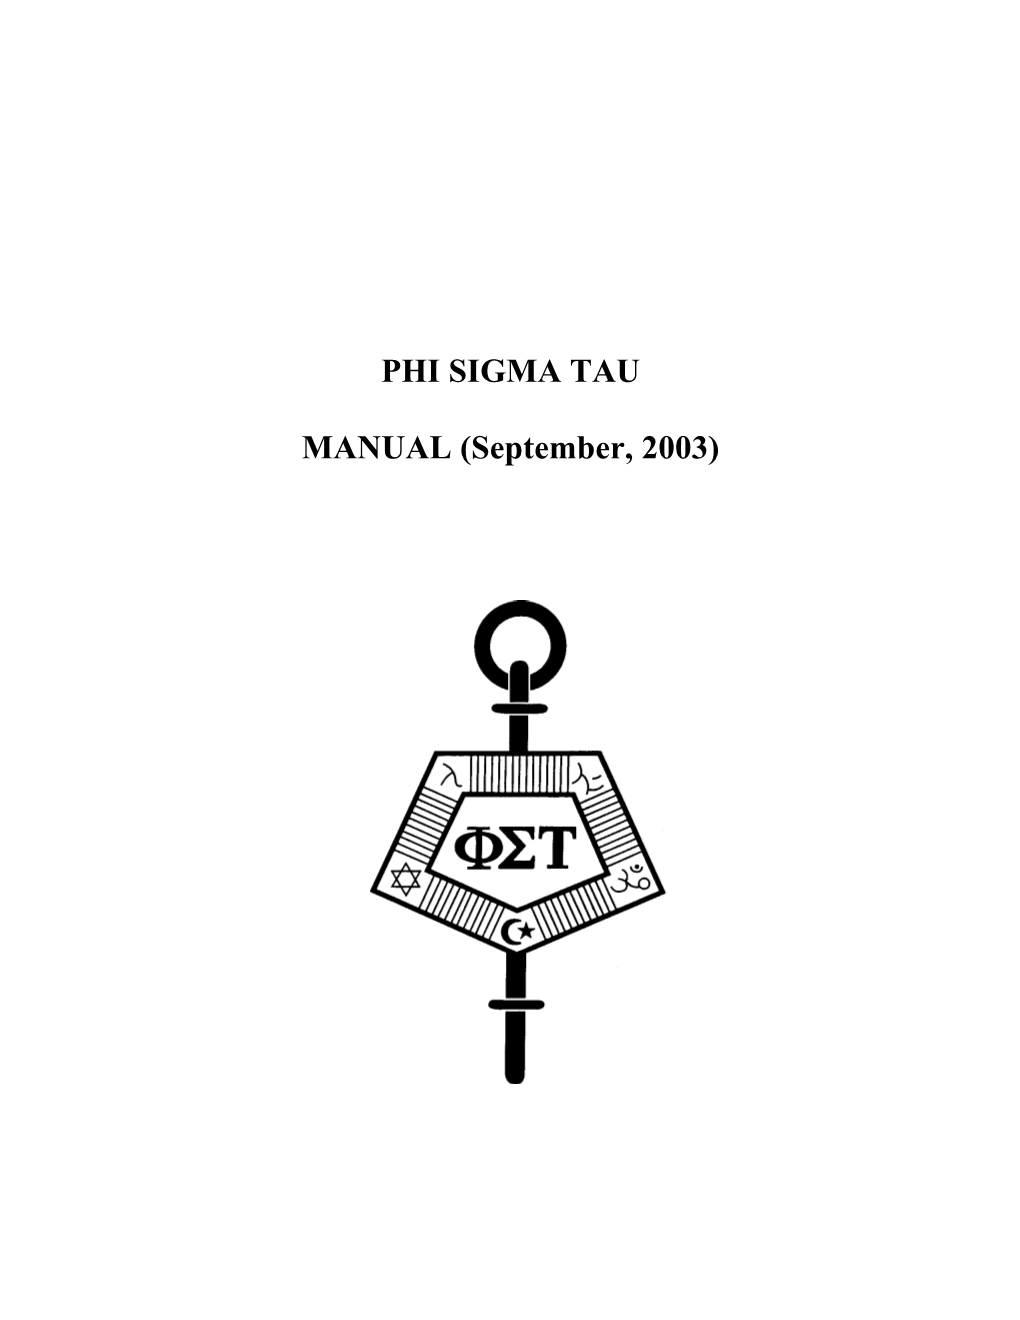 PHI SIGMA TAU MANUAL (September, 2003)